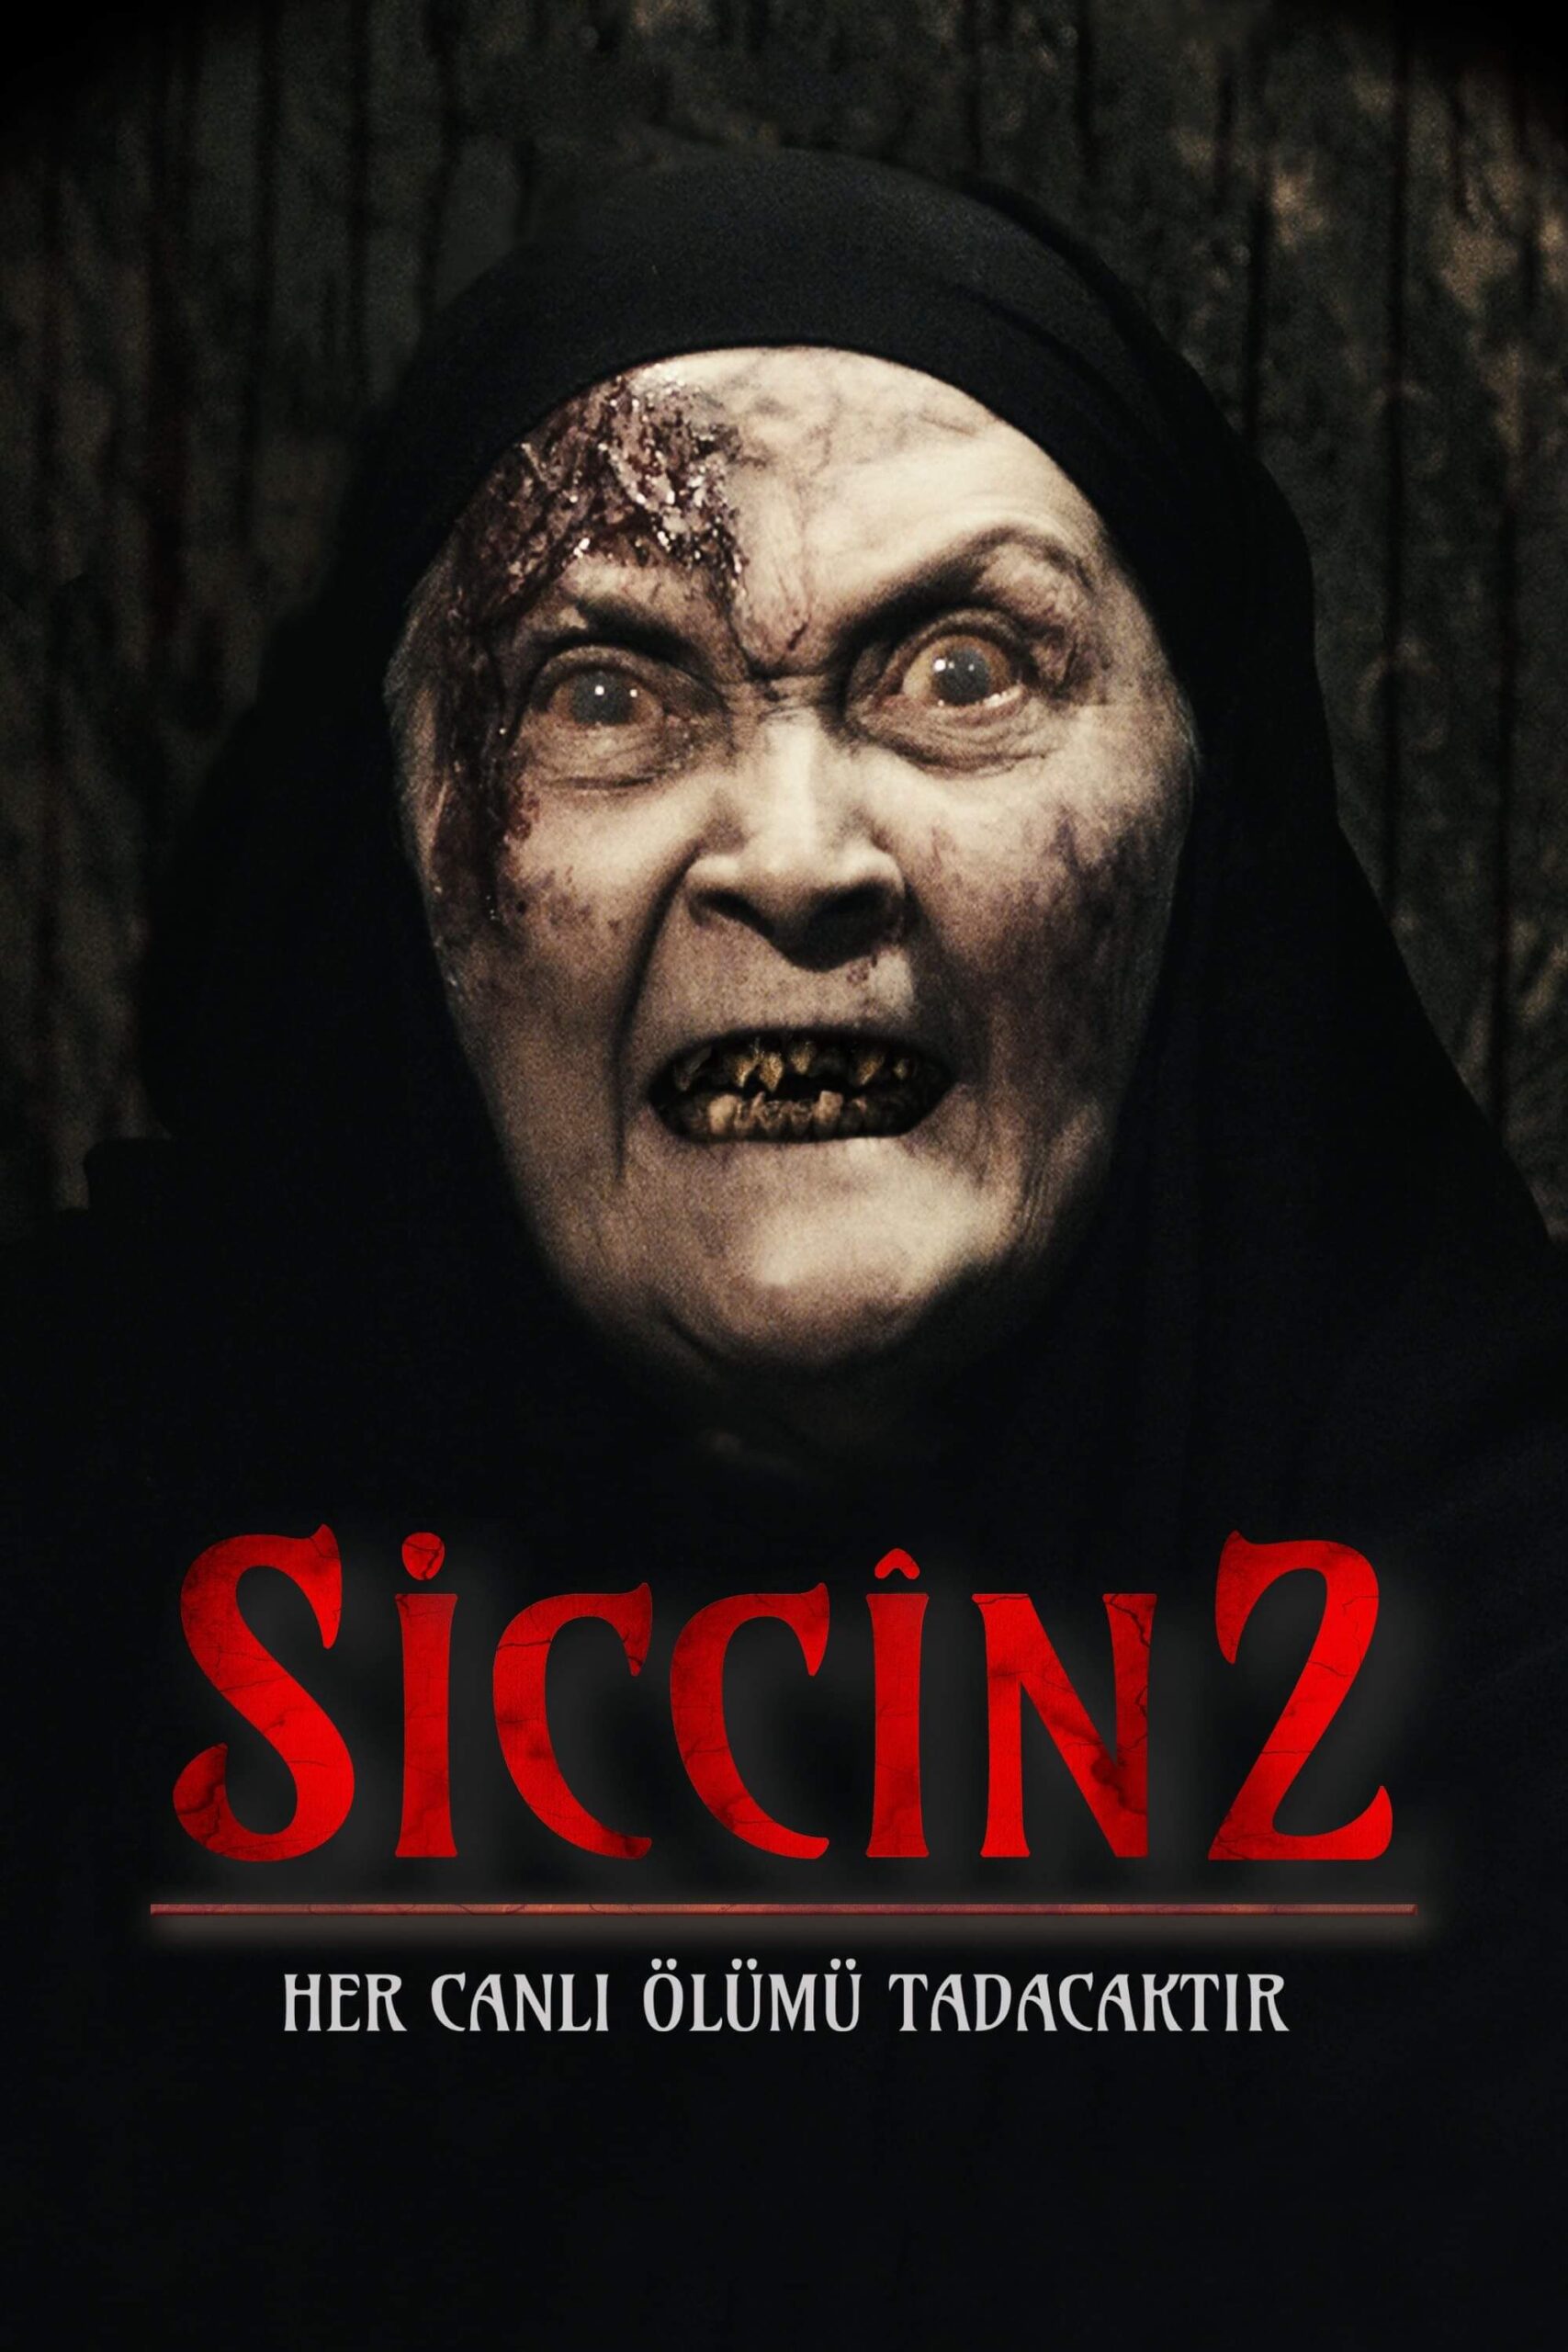 سجین 2 (Siccin 2)